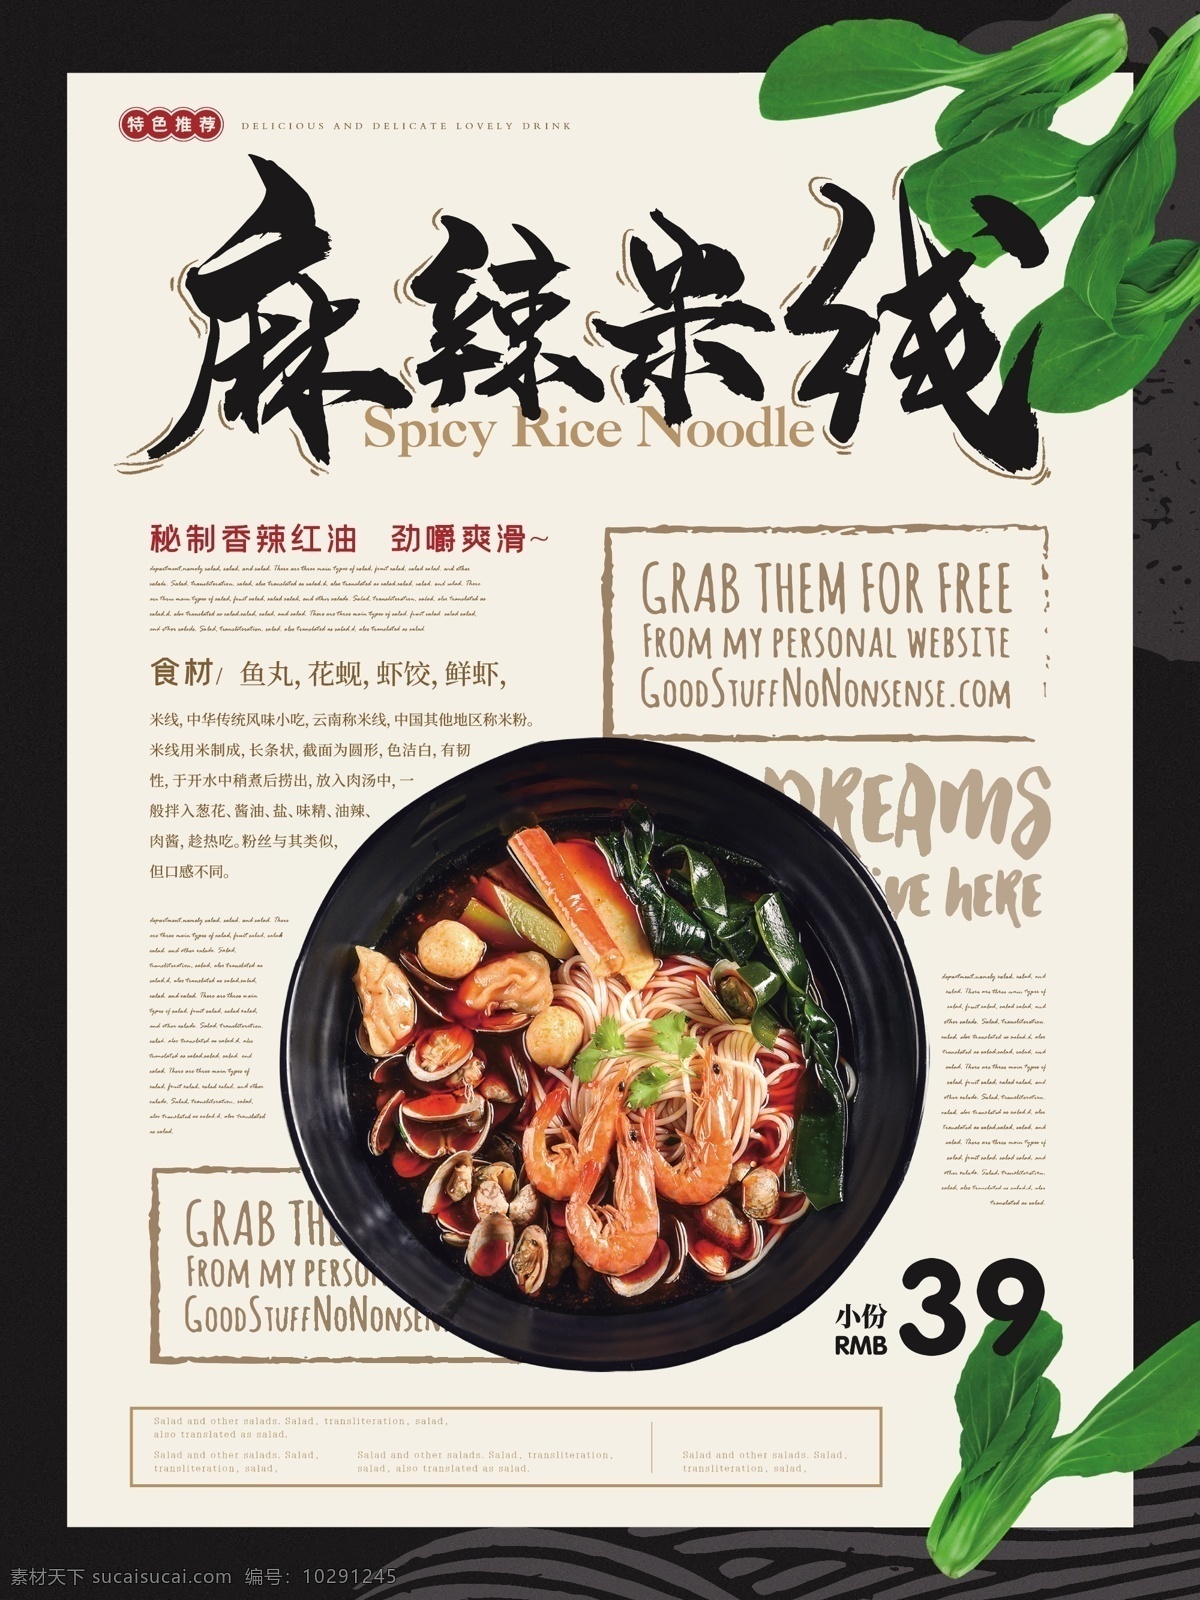 简约 清新 麻辣 米线 美食 主题 海报 简约风 麻辣米线 海鲜 青菜 健康 美食主题 美味